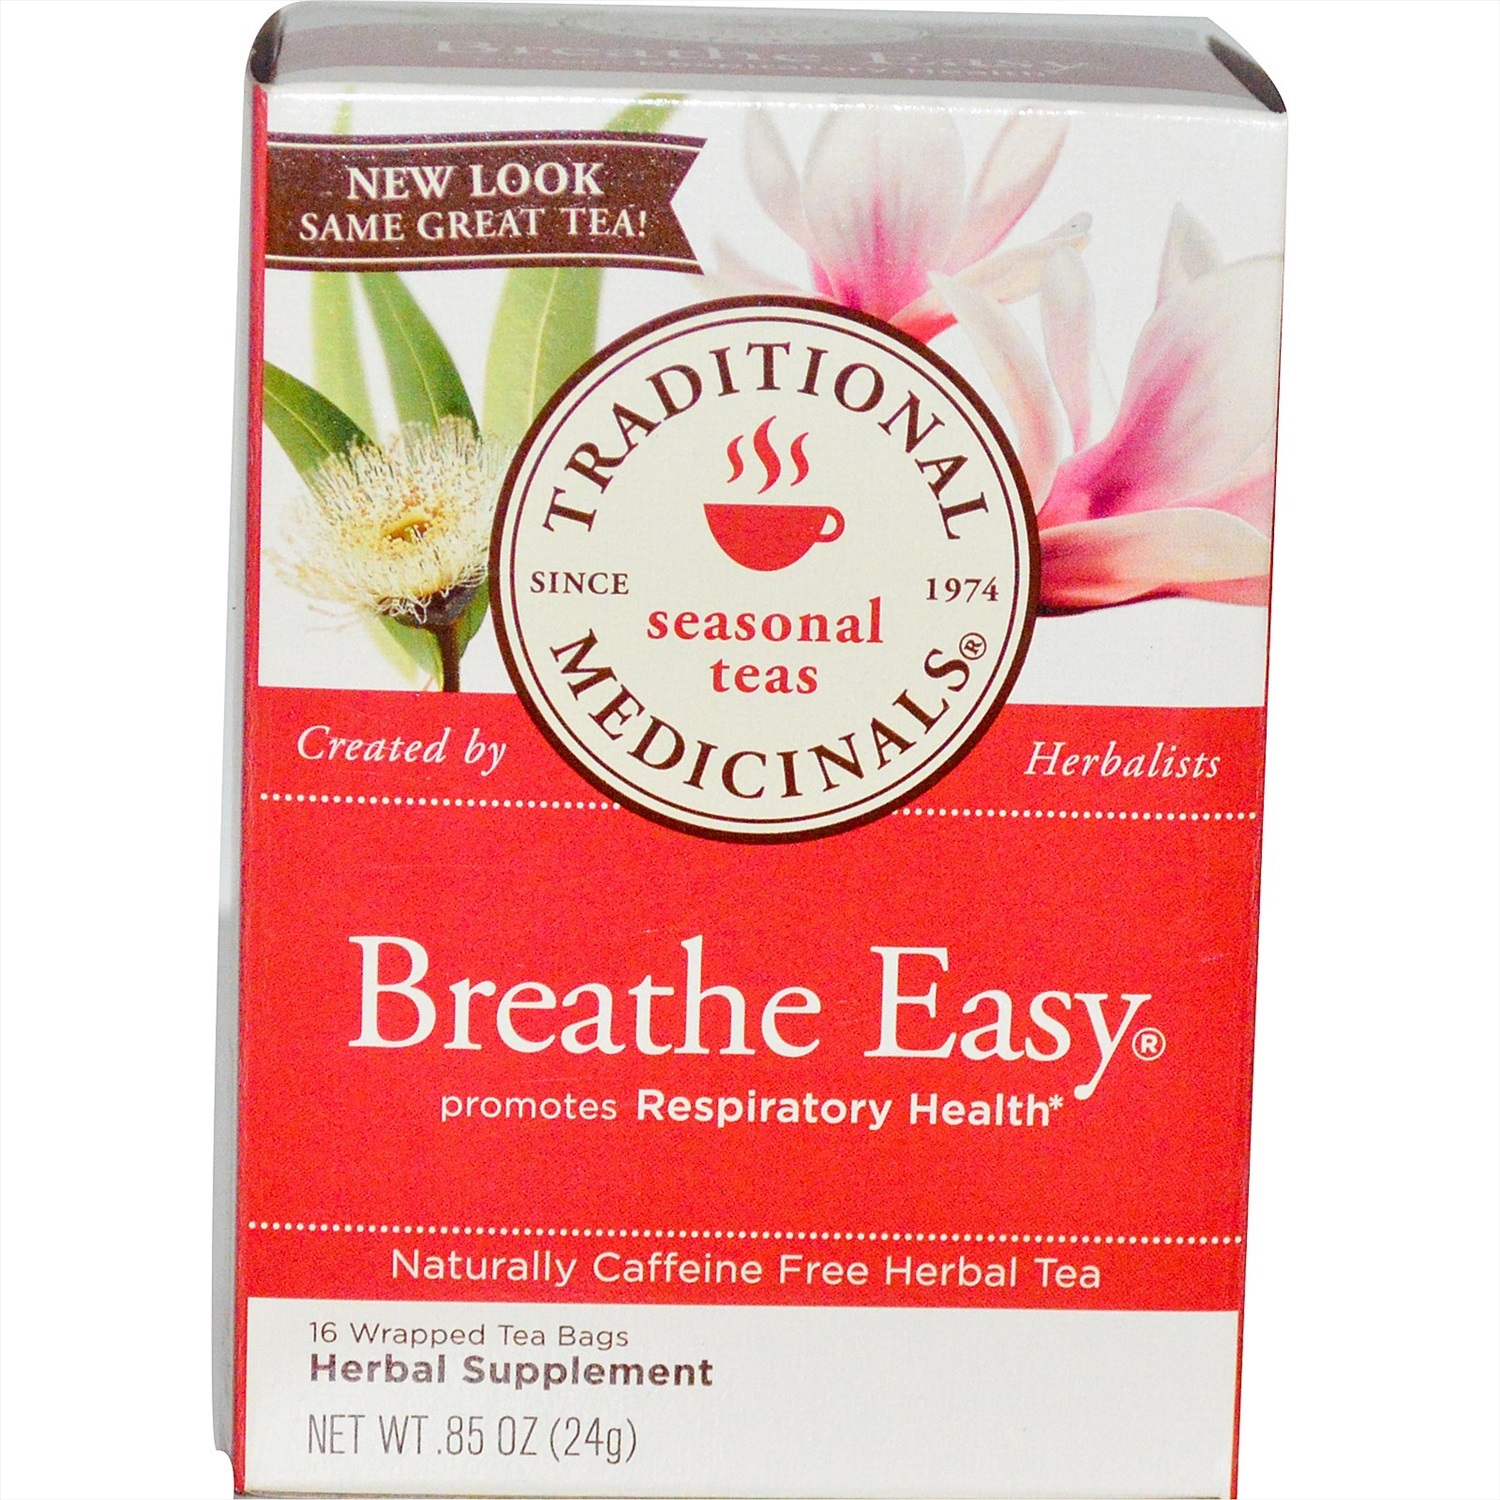 Easy breathing. Easy Breathe от кашля. Чай легкое дыхание. Panther's Breath чай.